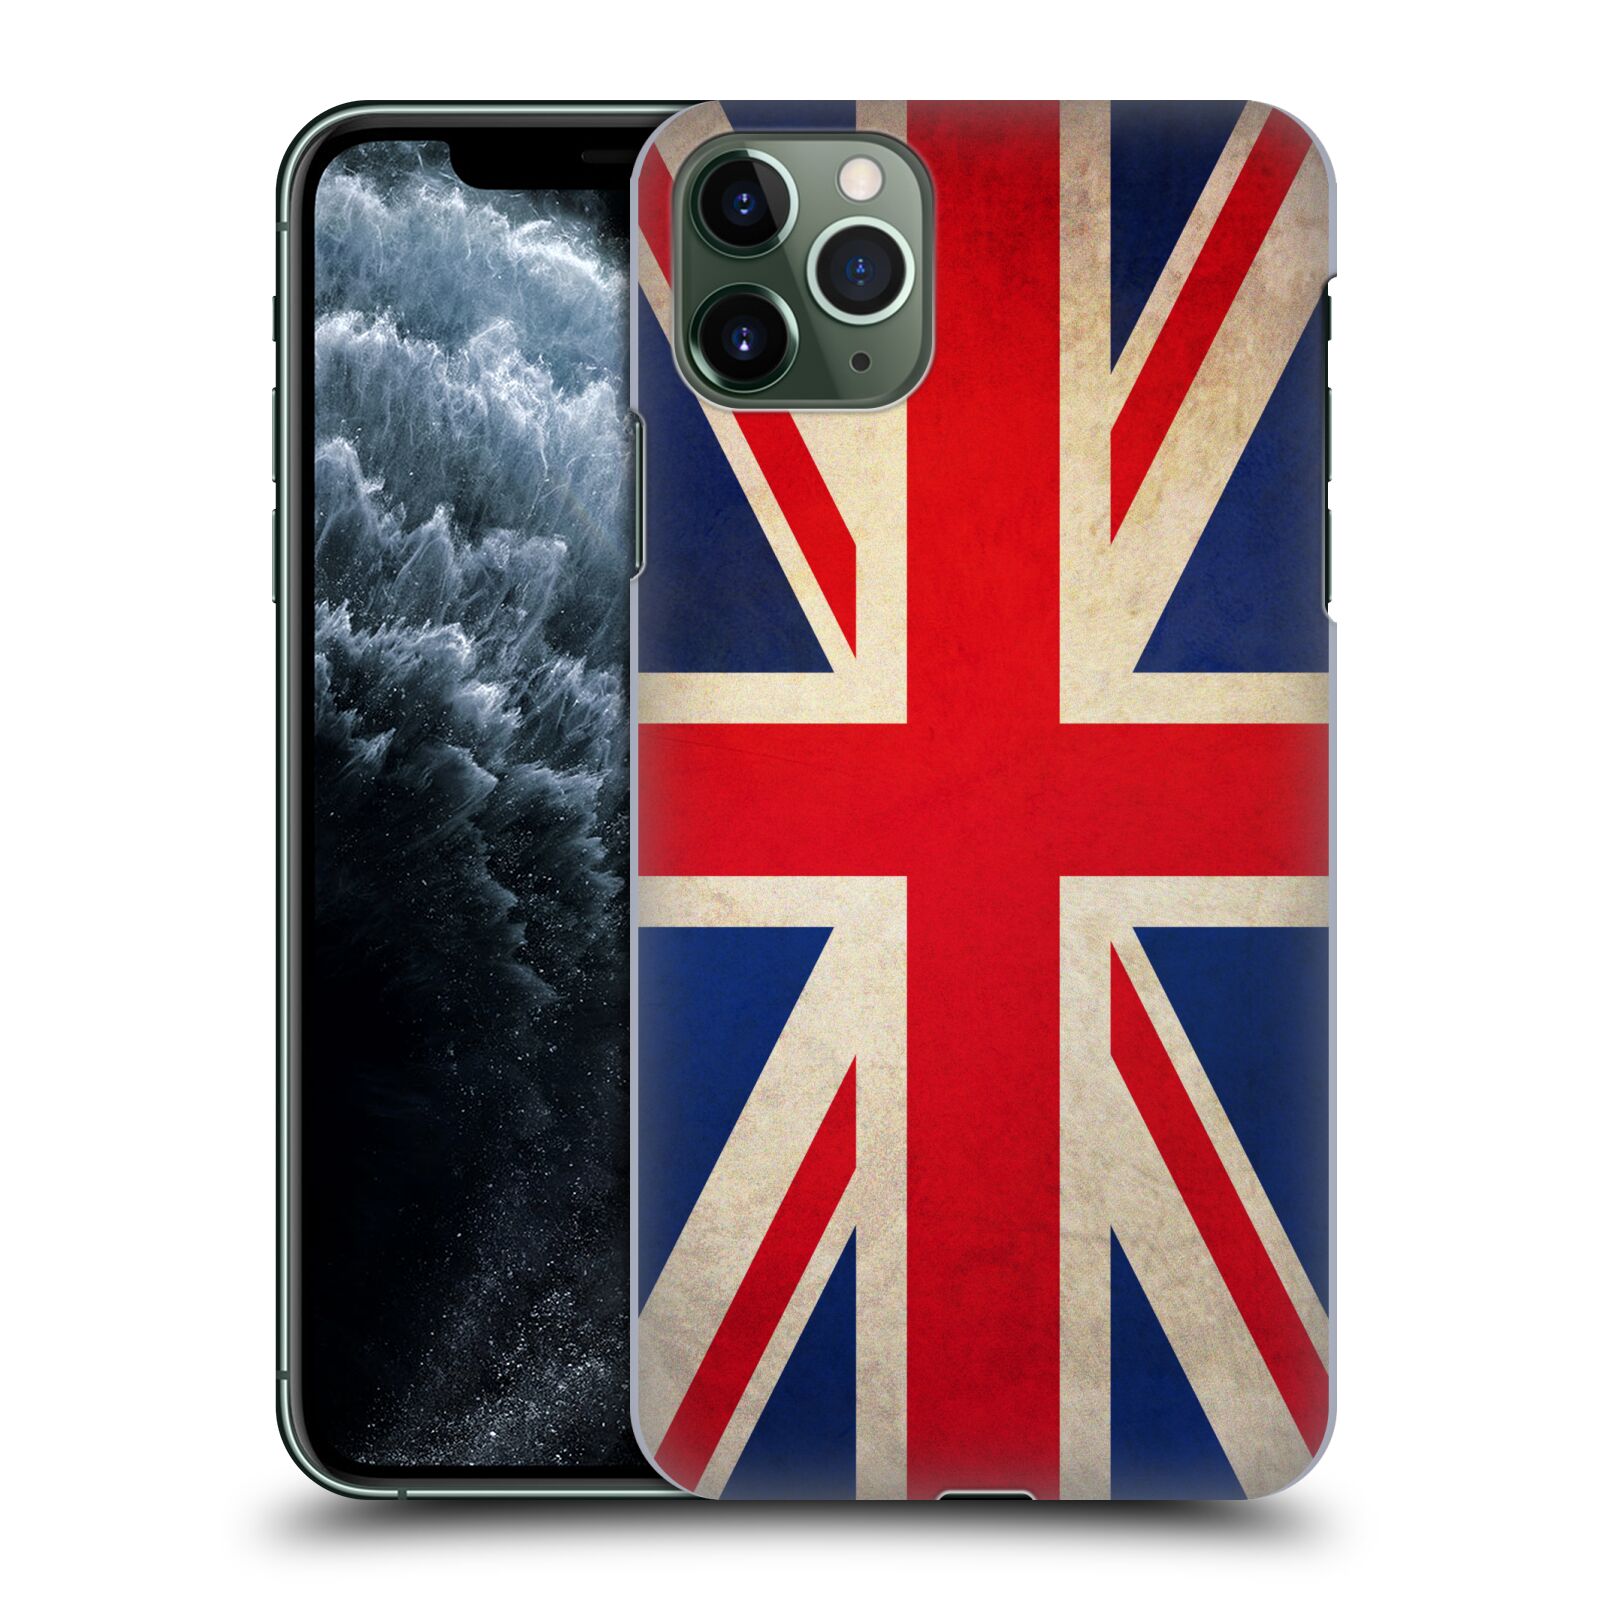 Pouzdro na mobil Apple Iphone 11 PRO MAX - HEAD CASE - vzor VINTAGE VLAJKY VELKÁ BRITÁNIE